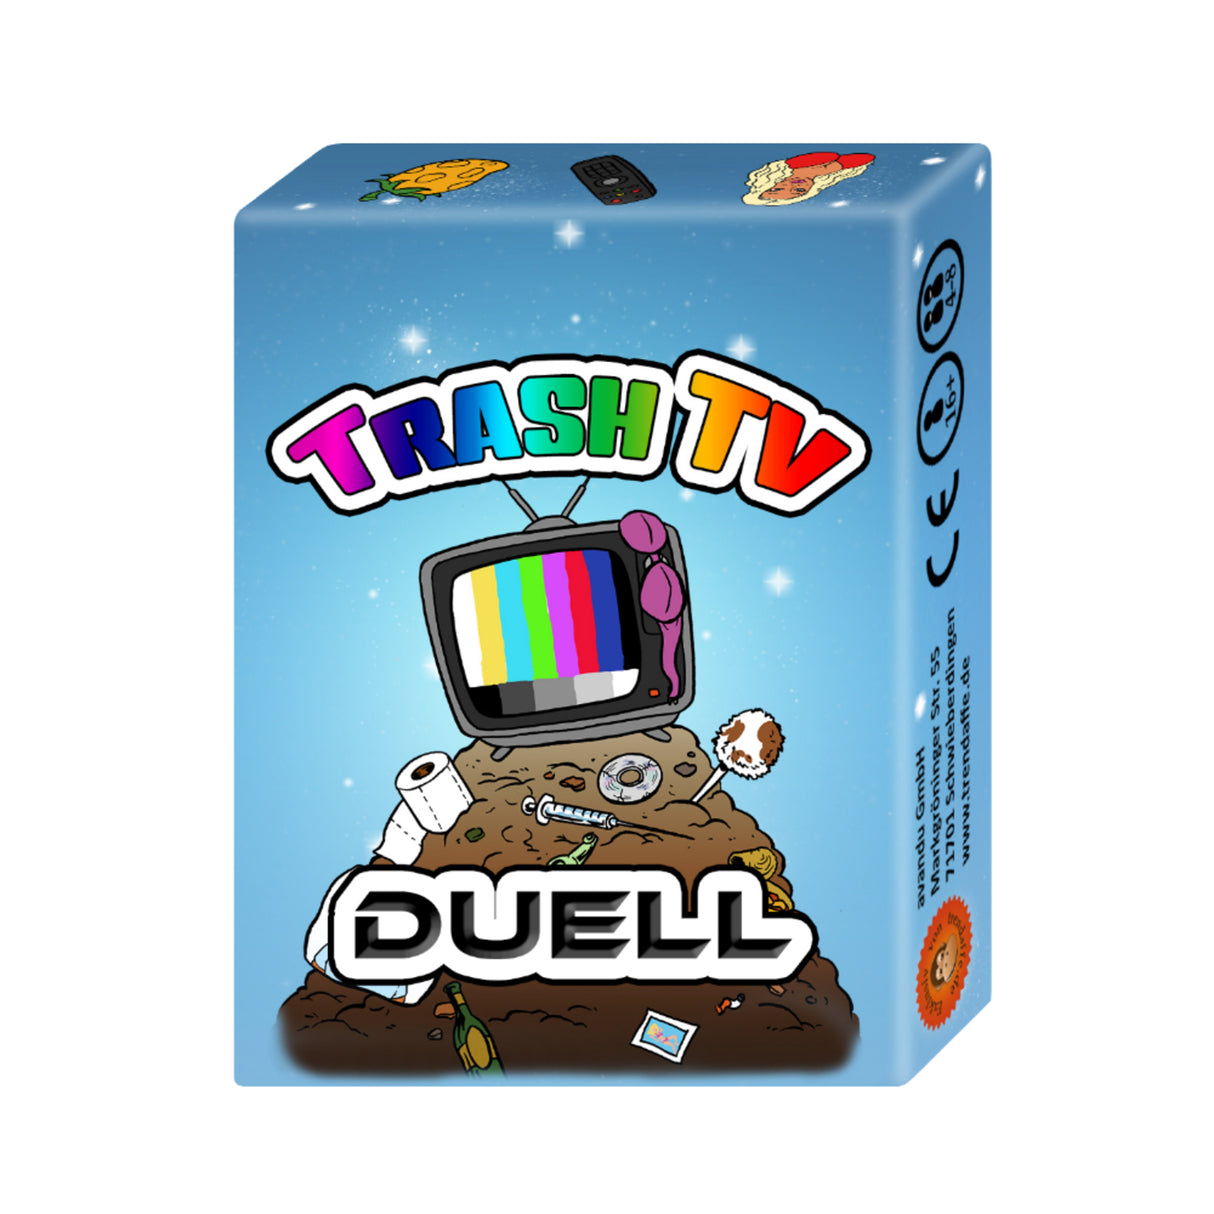 Trash-TV Duell - das lustige Kartenspiel für alle Fans der leichten Fernsehunterhaltung